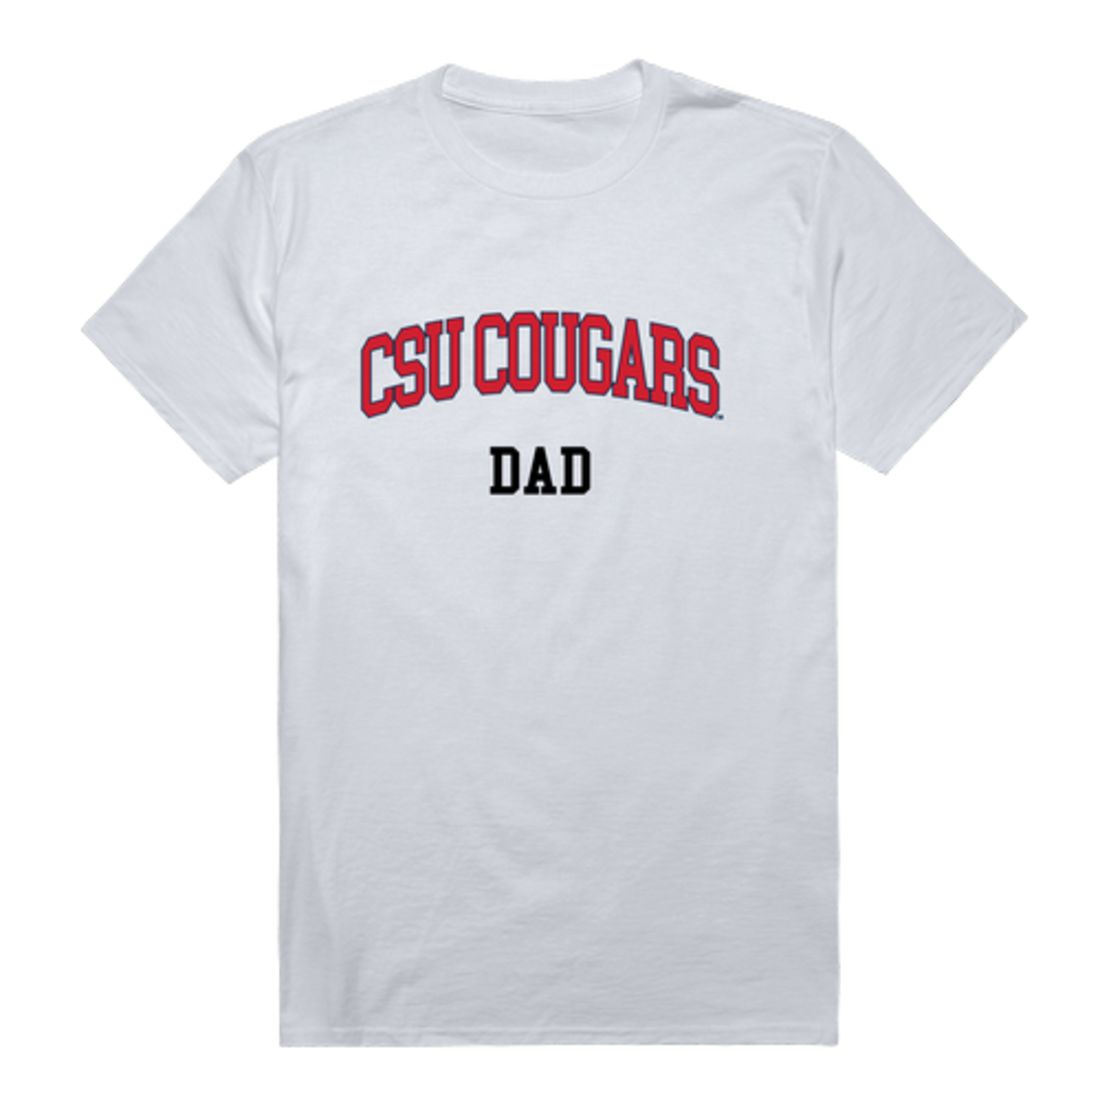 Columbus State University Cougars Dad T-Shirt